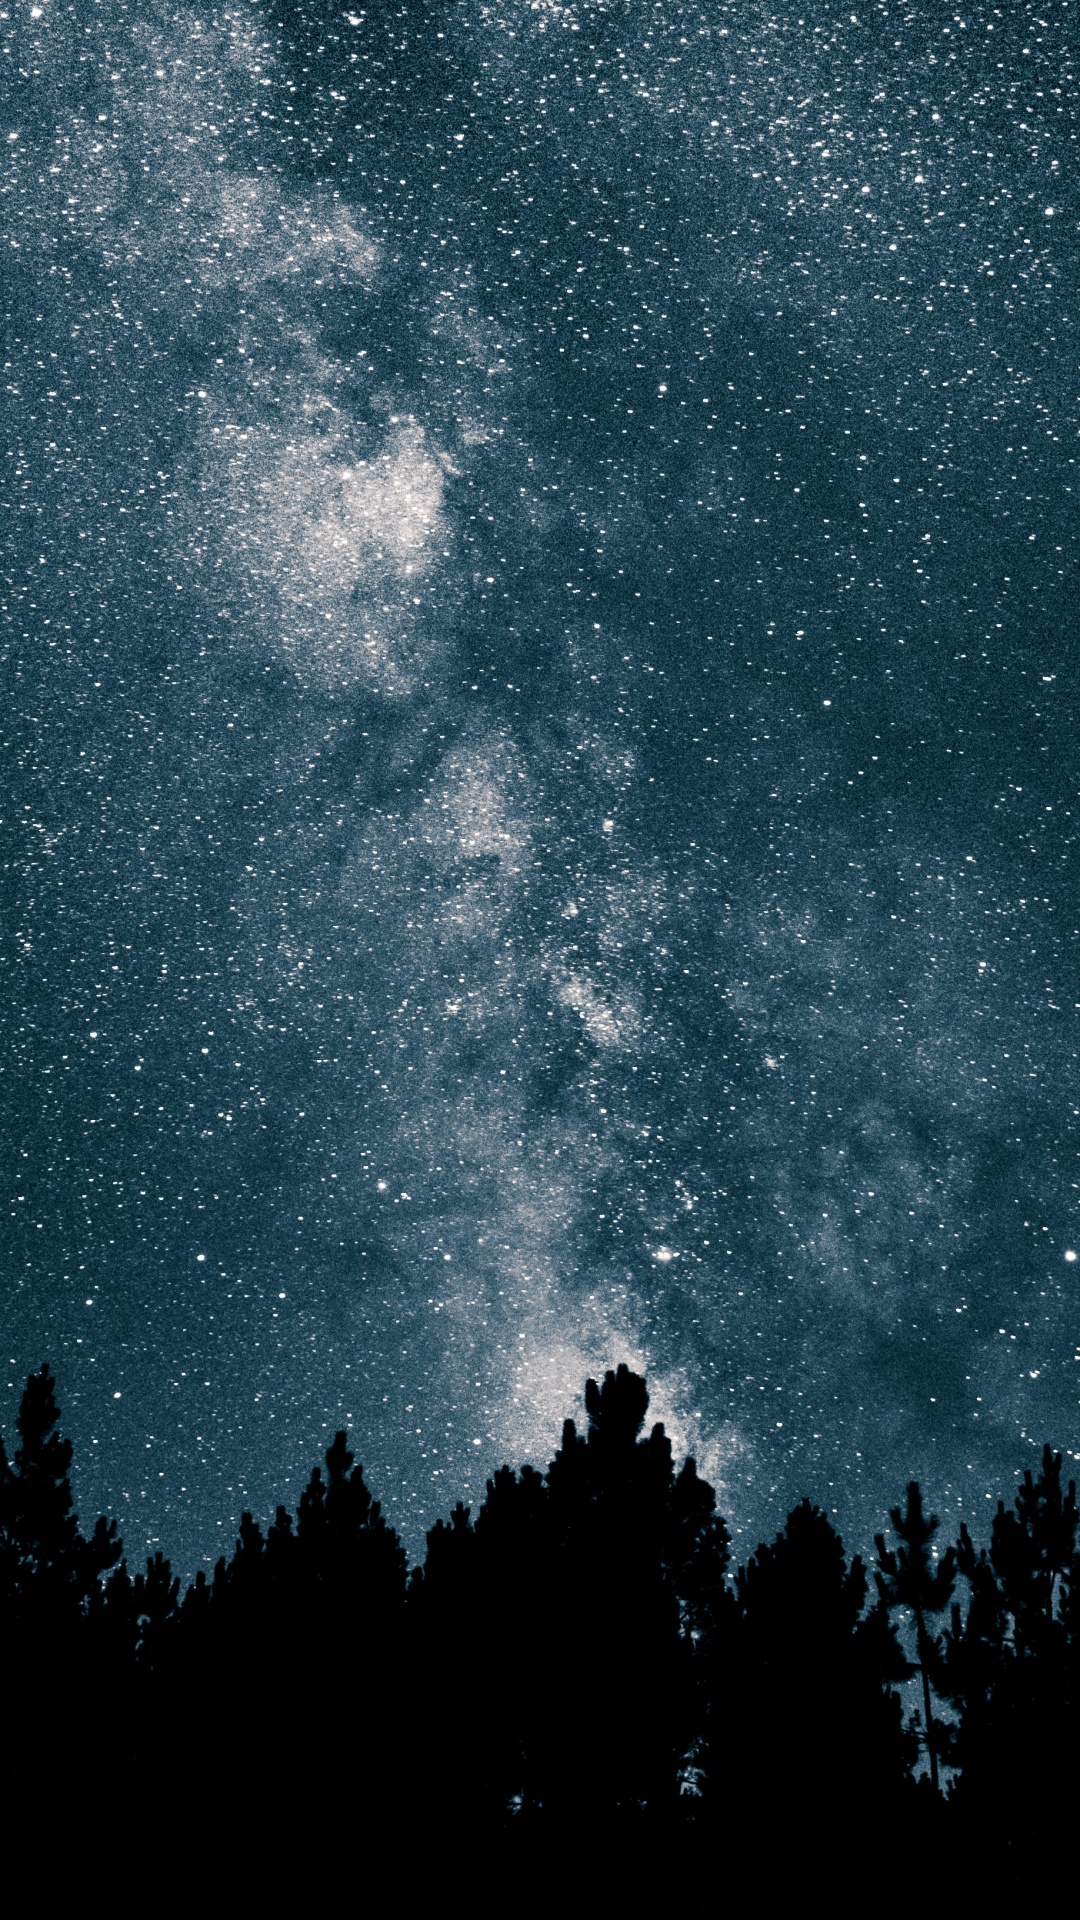 银河系, 明星, 夜晚的天空, 天文学, 天文学对象 壁纸 1080x1920 允许